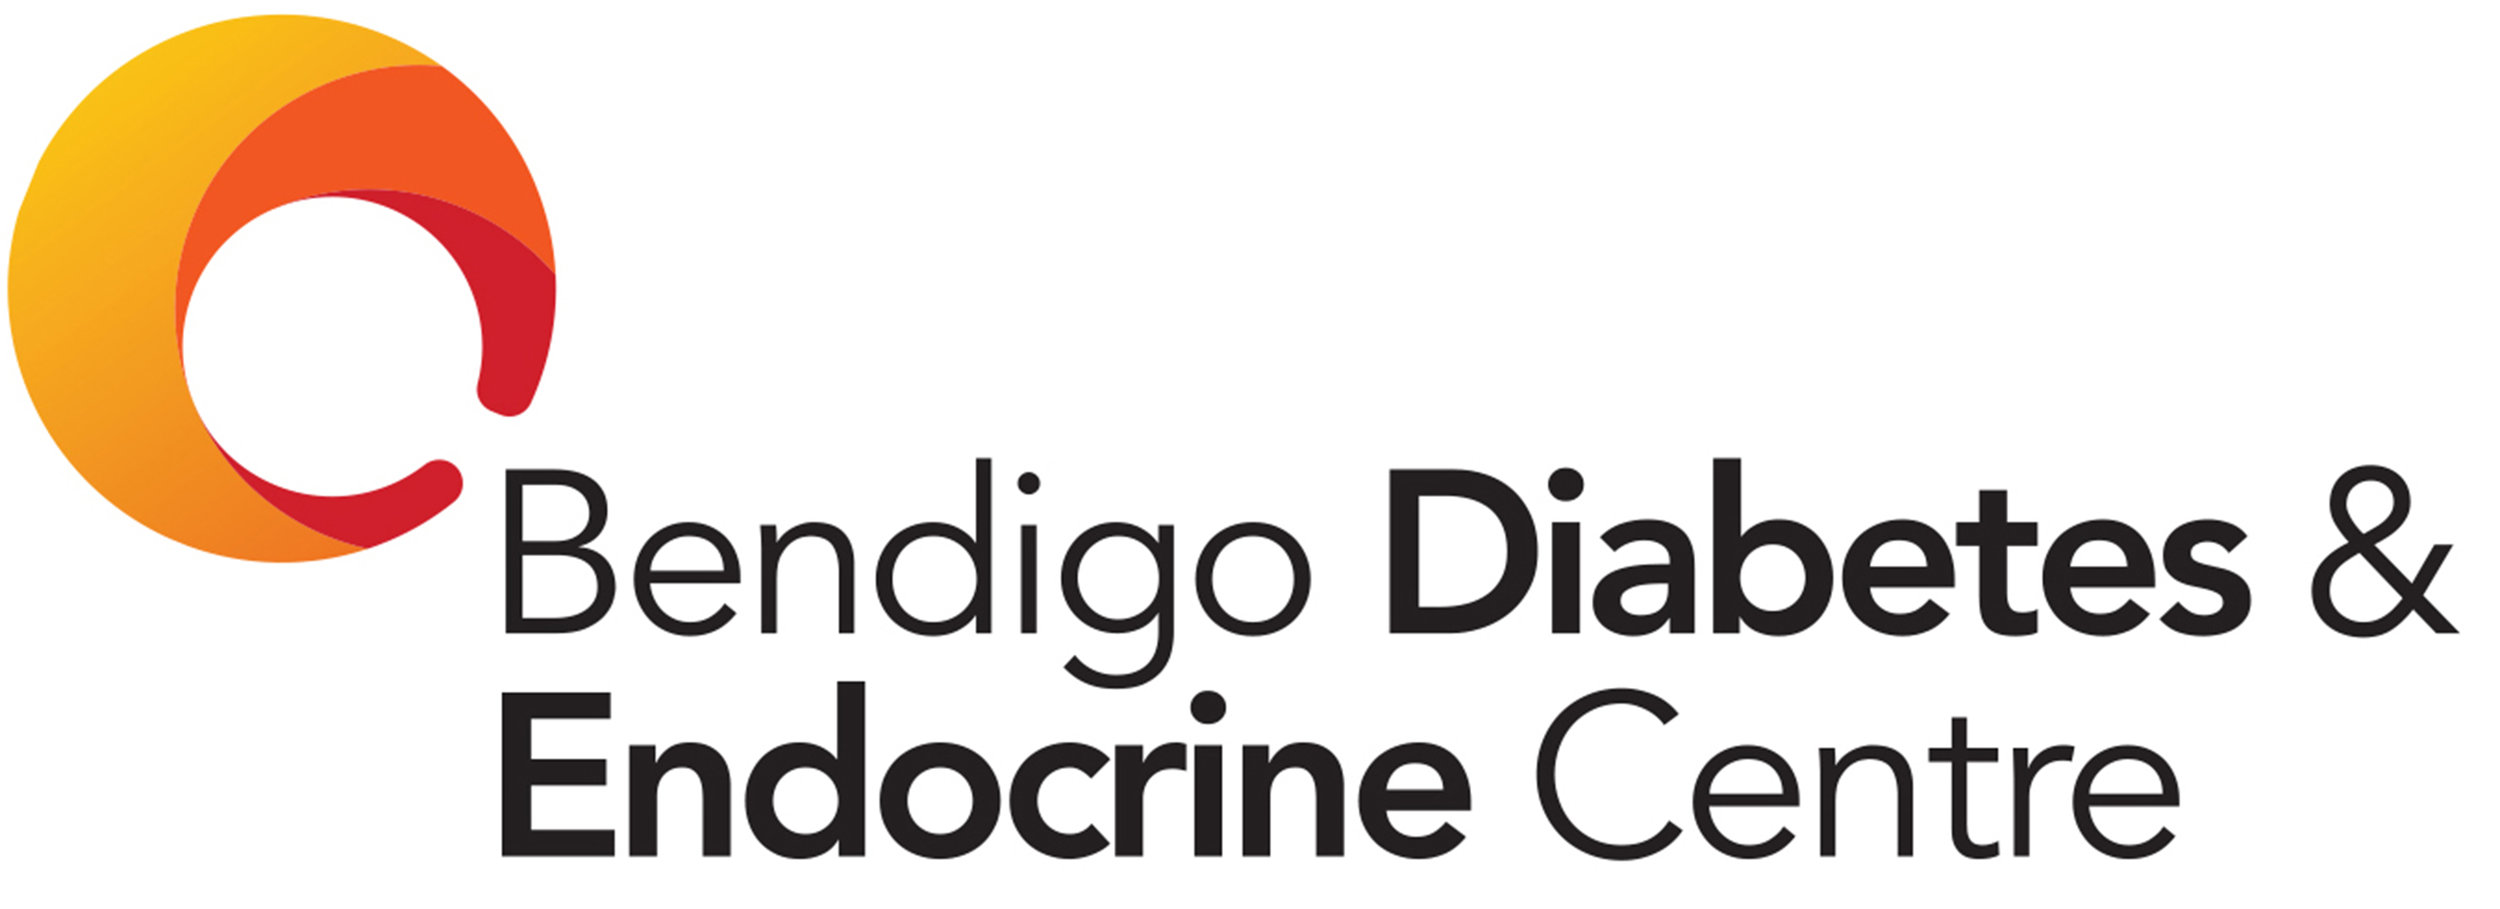 Bendigo Diabetes and Endocrine Centre